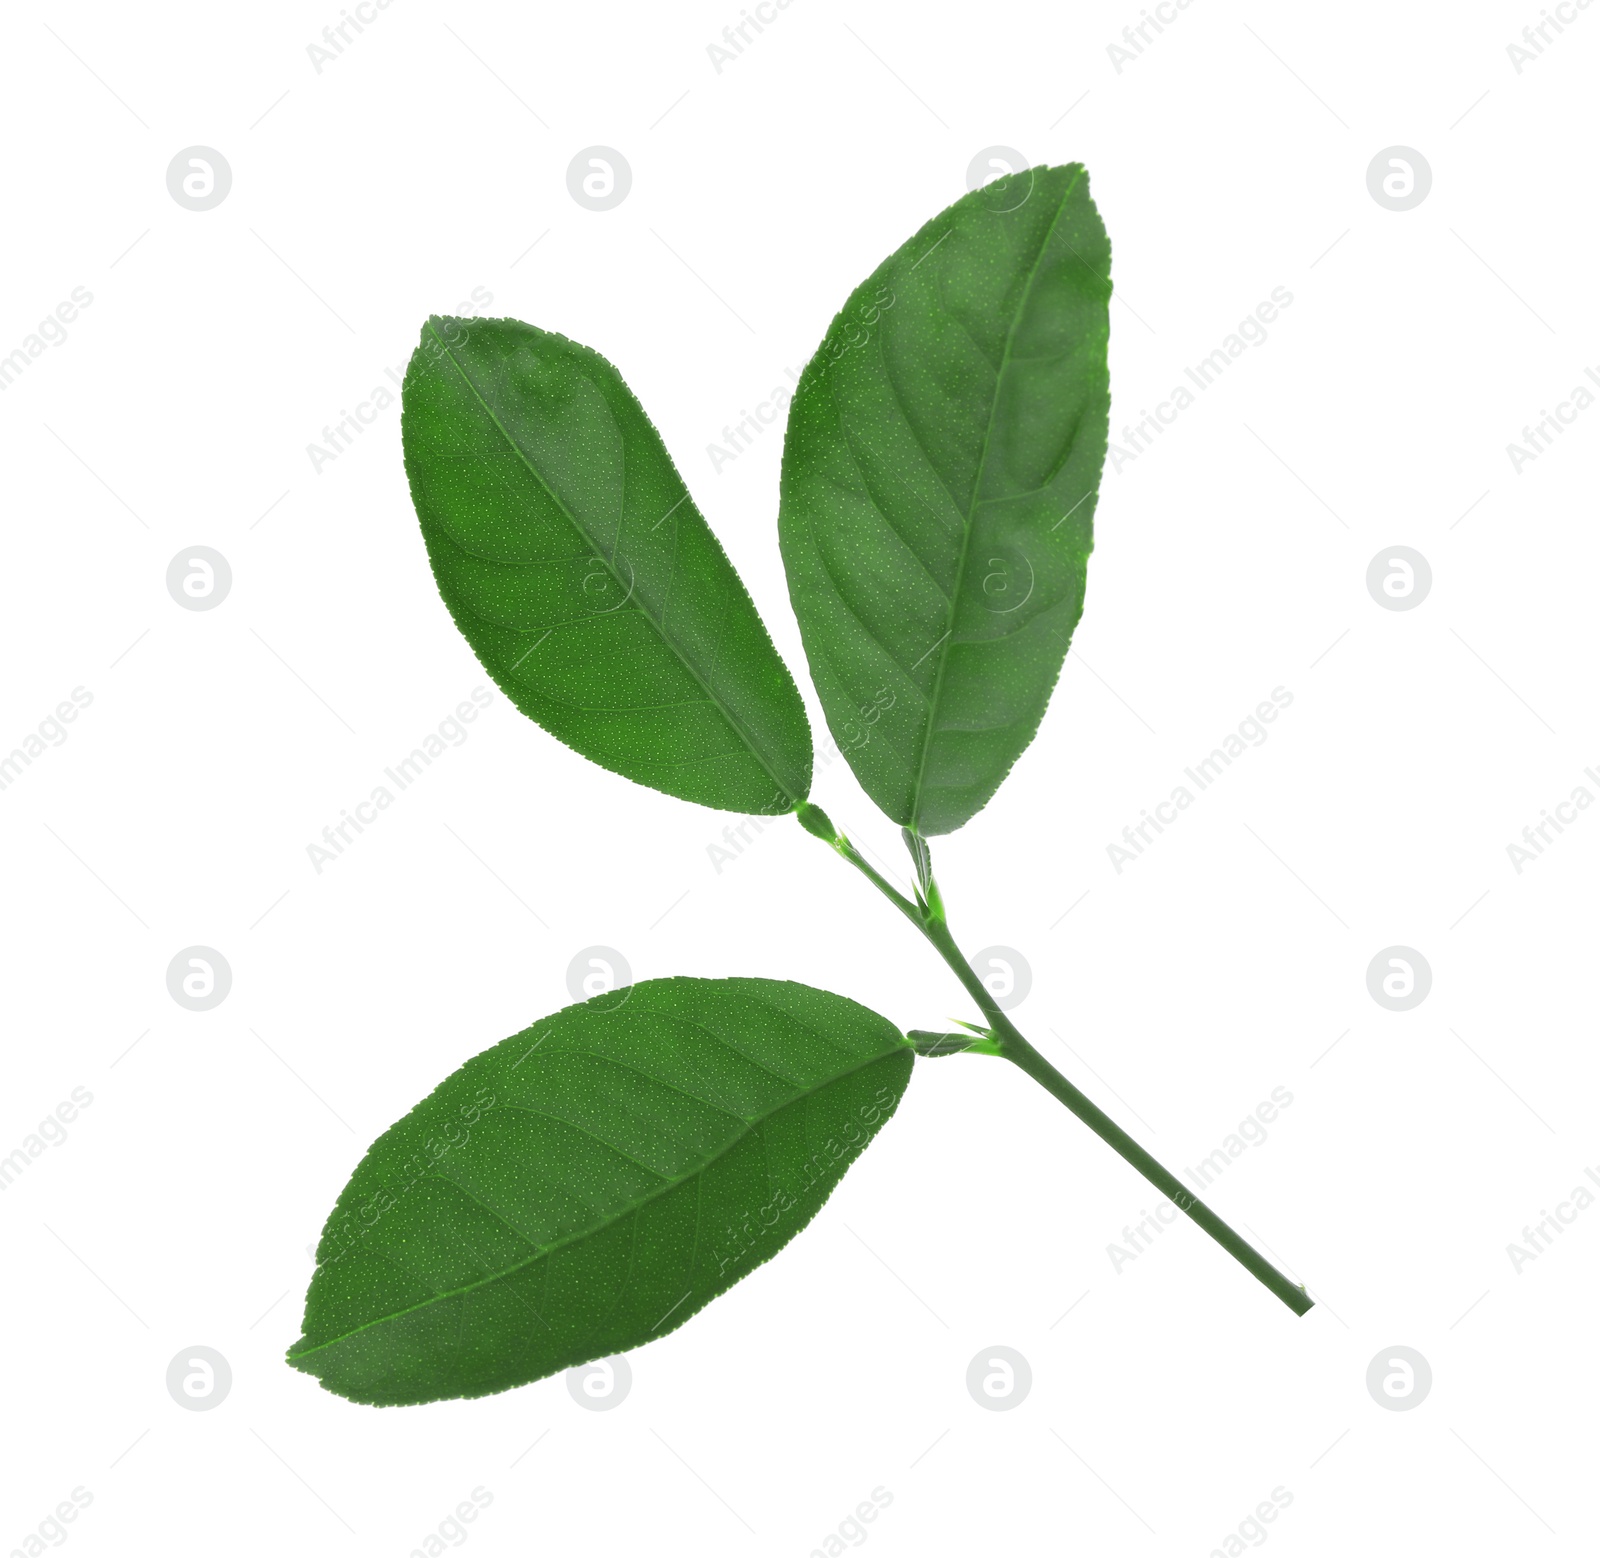 Photo of Fresh green lemon leaves on white background